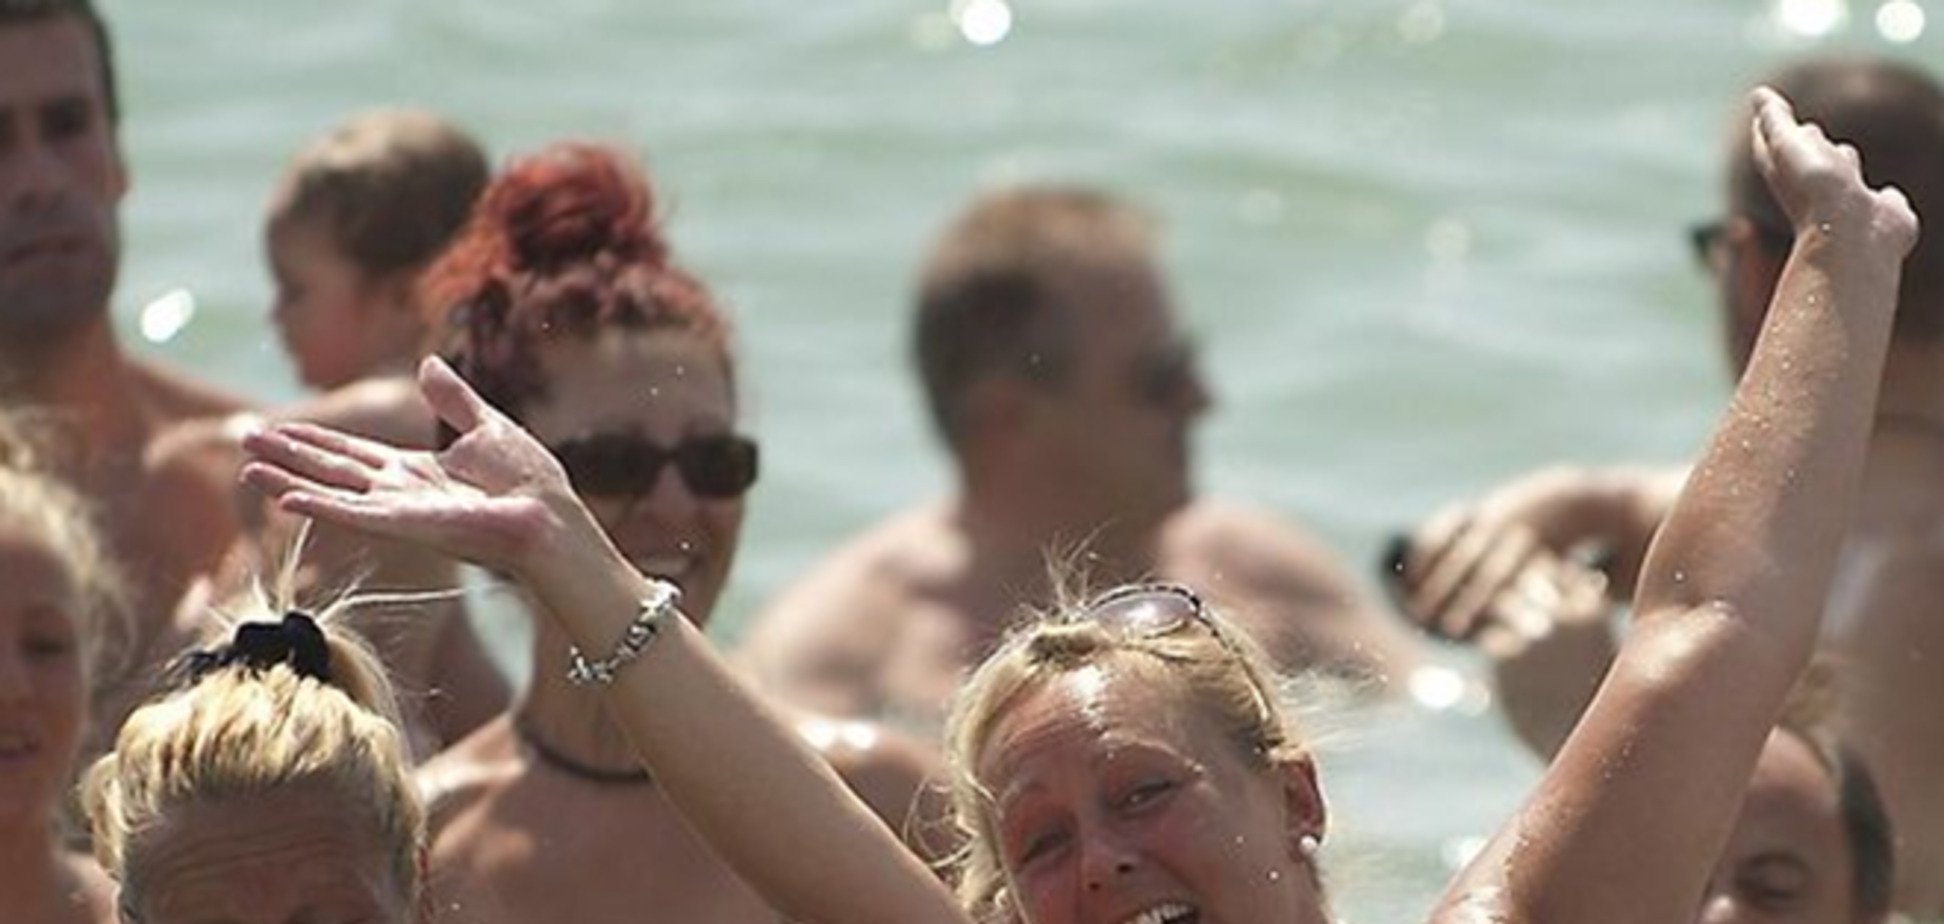 В Испании поставили рекорд: 729 нудистов собрались на пляже